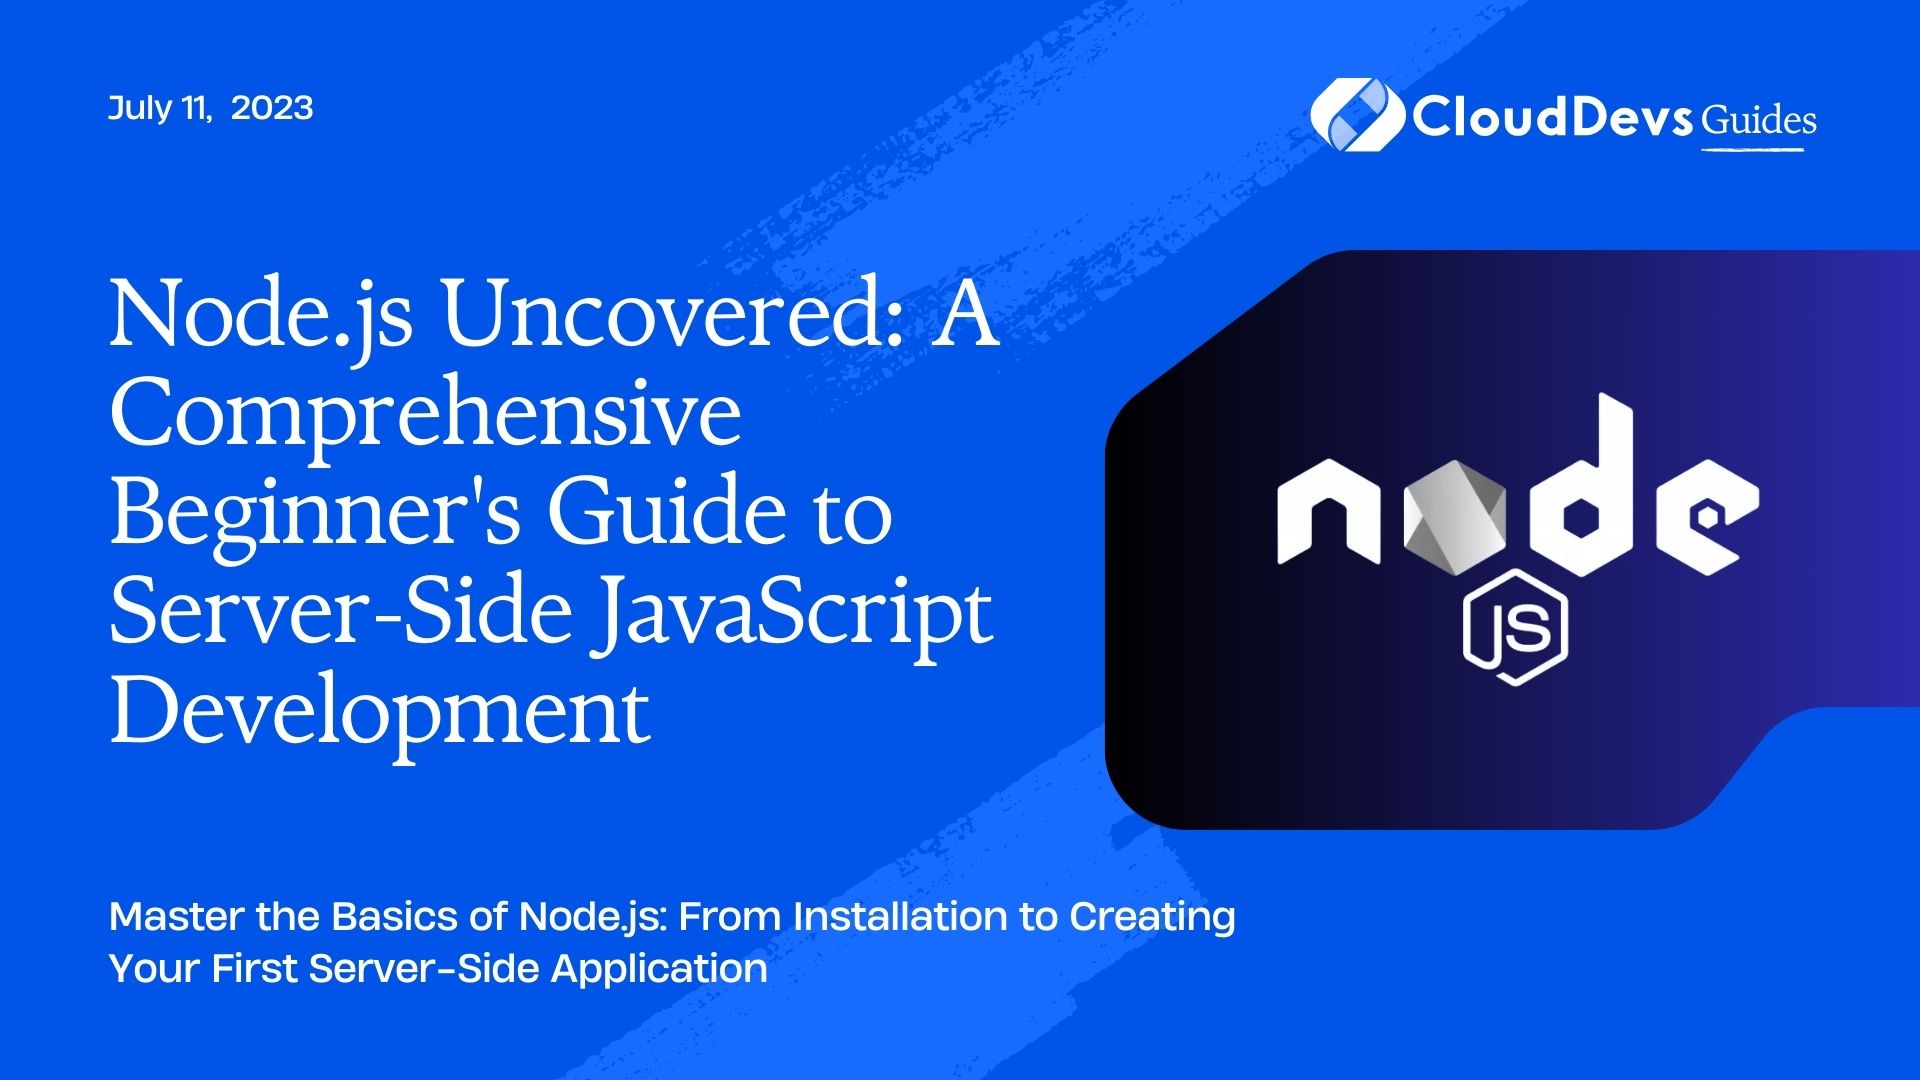 Node.js Uncovered: A Comprehensive Beginner's Guide to Server-Side JavaScript Development